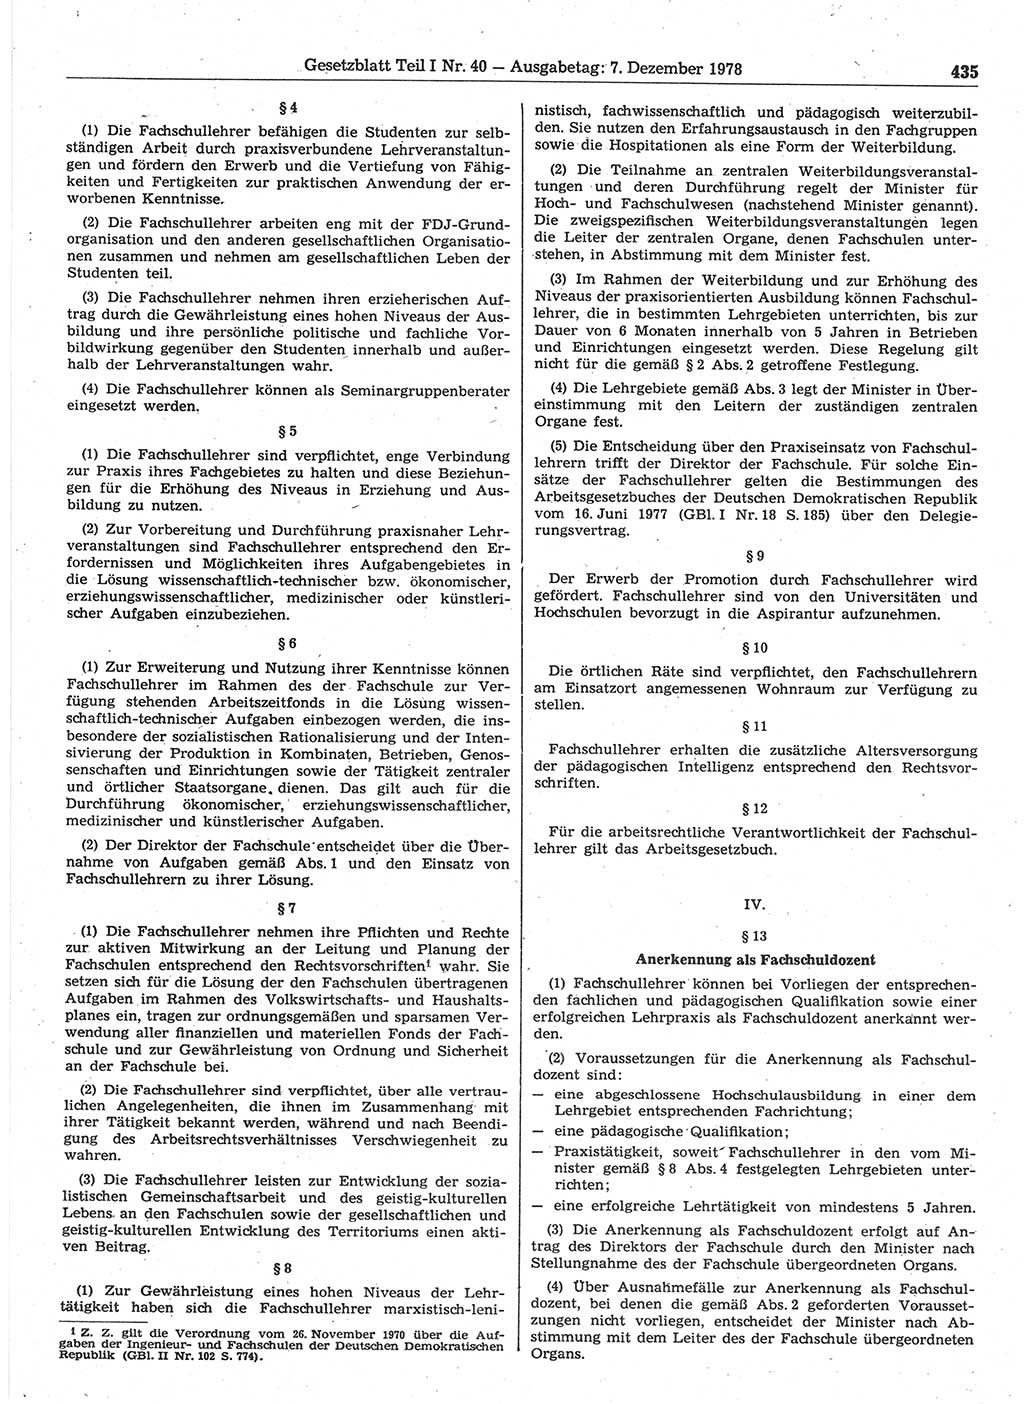 Gesetzblatt (GBl.) der Deutschen Demokratischen Republik (DDR) Teil Ⅰ 1978, Seite 435 (GBl. DDR Ⅰ 1978, S. 435)